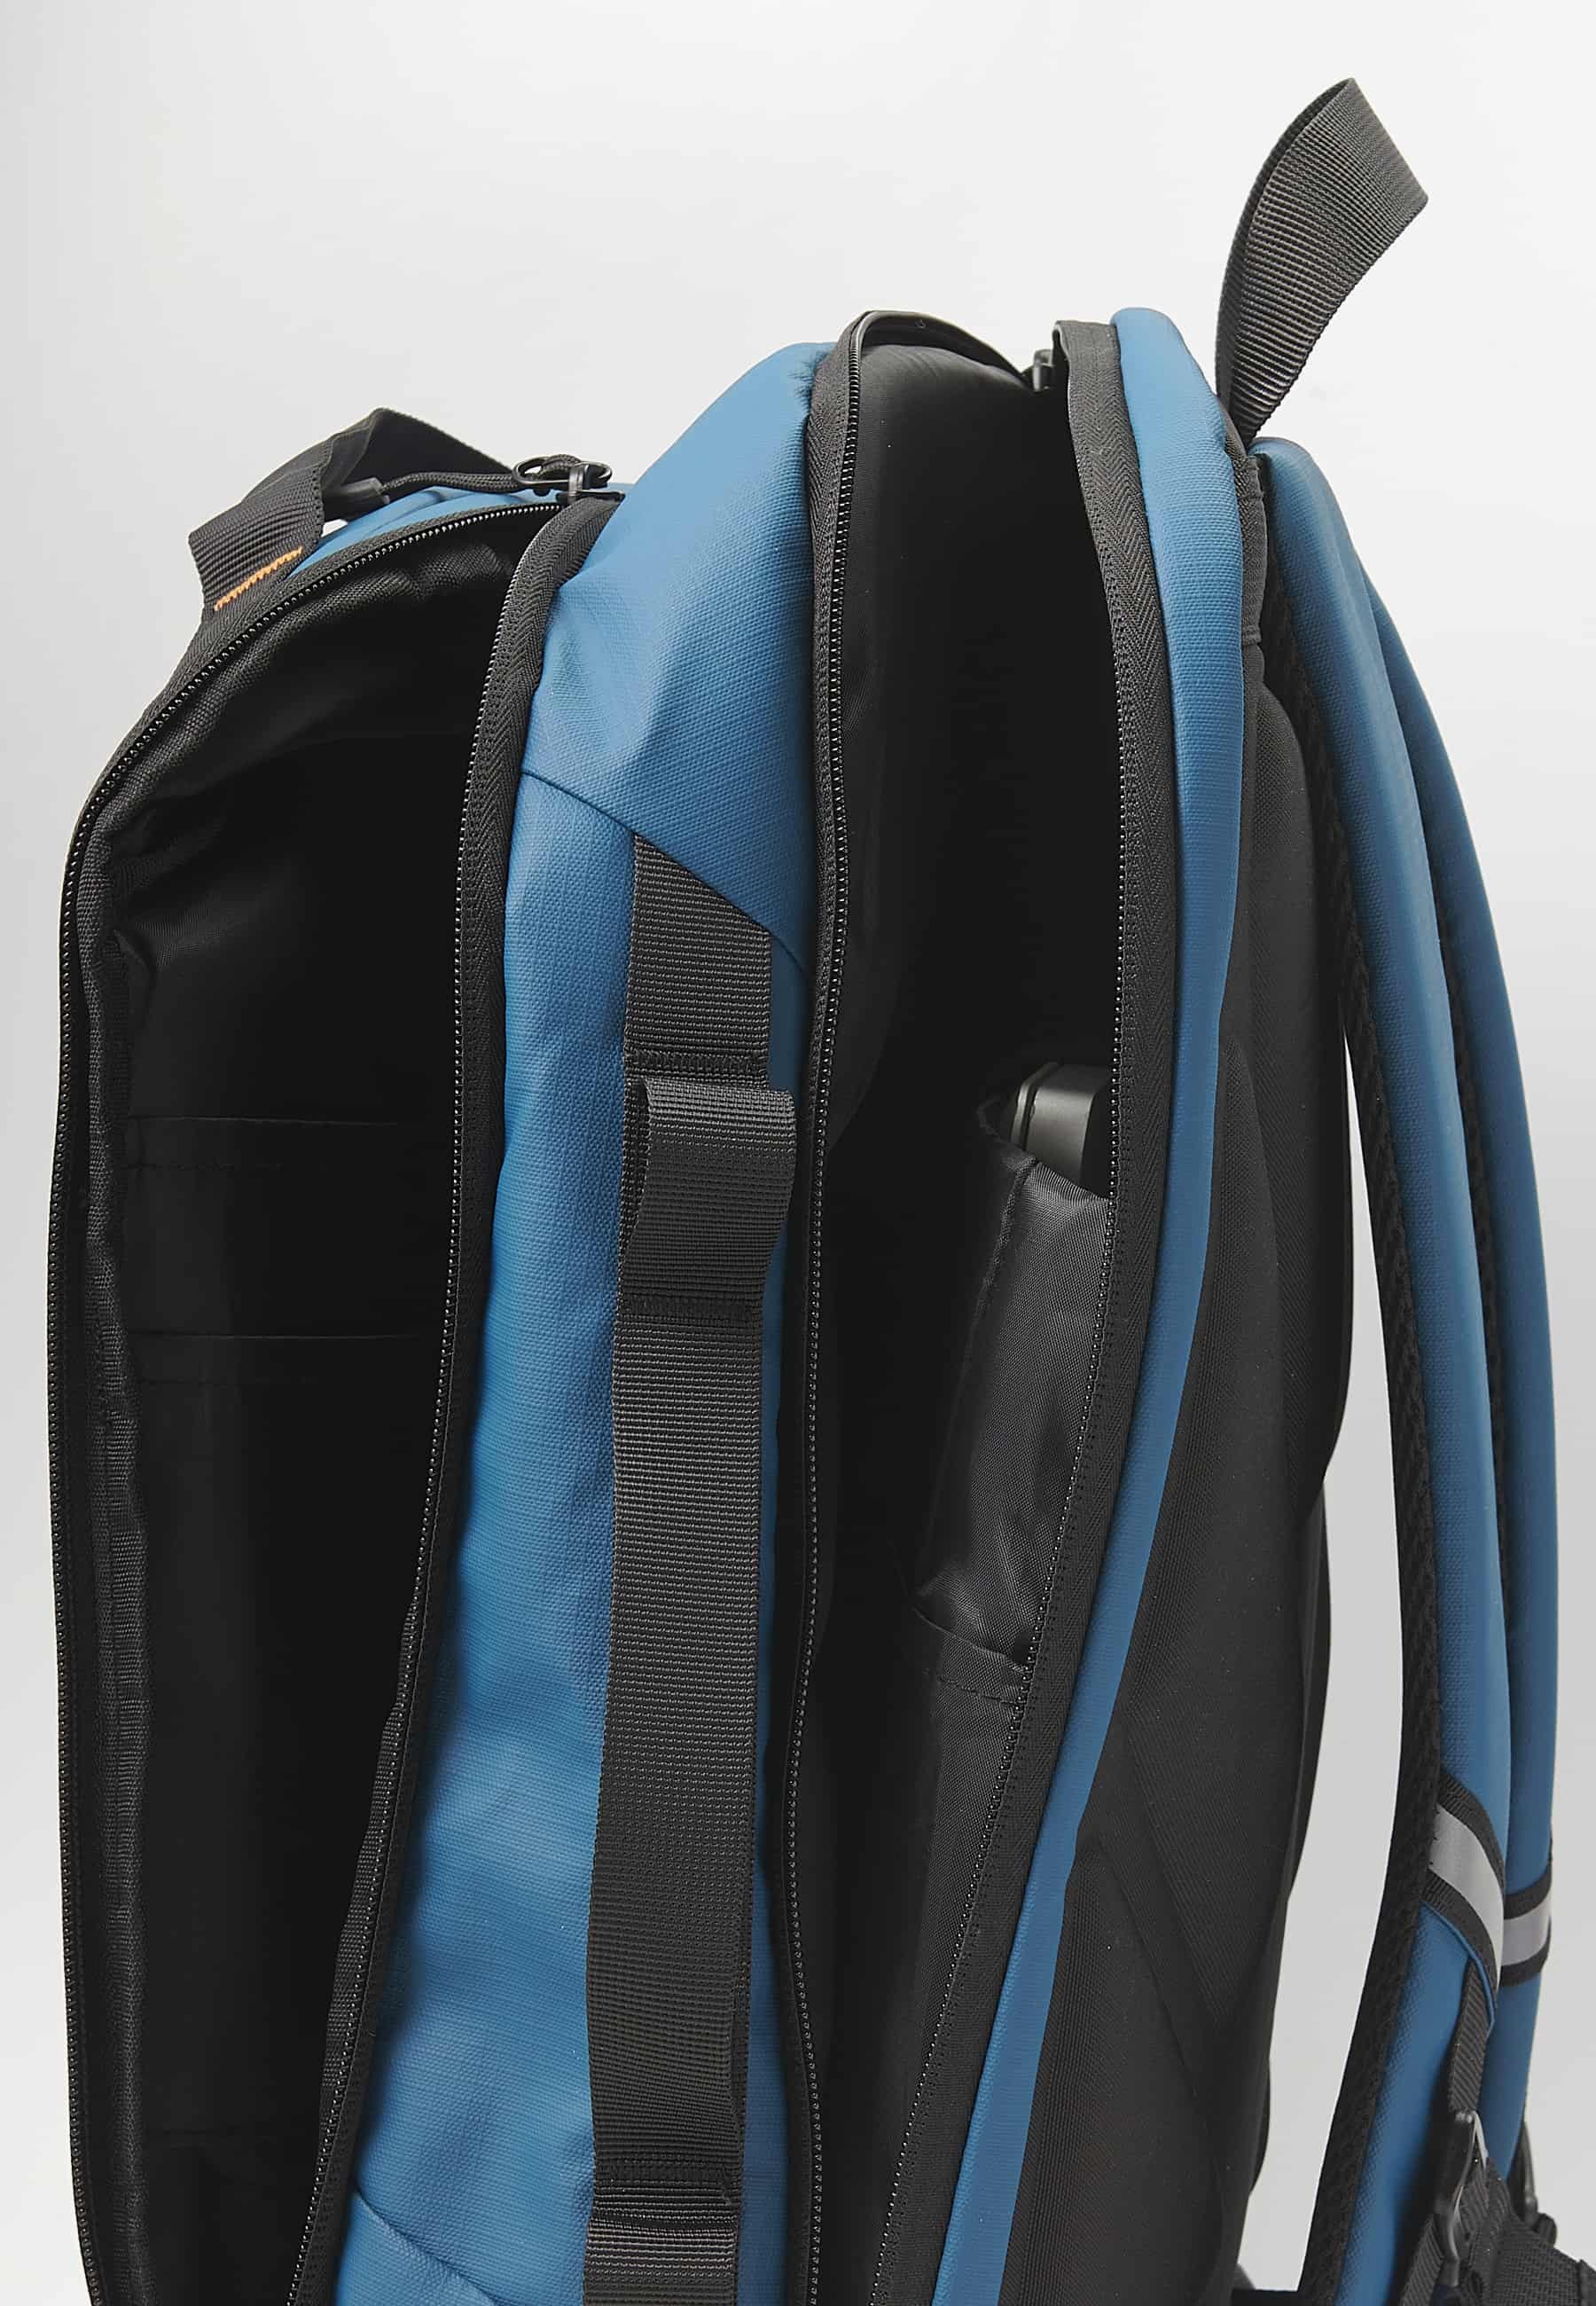 Koröshi-Rucksack mit zwei Reißverschlussfächern, eines für einen Laptop, und verstellbaren Trägern in Blau